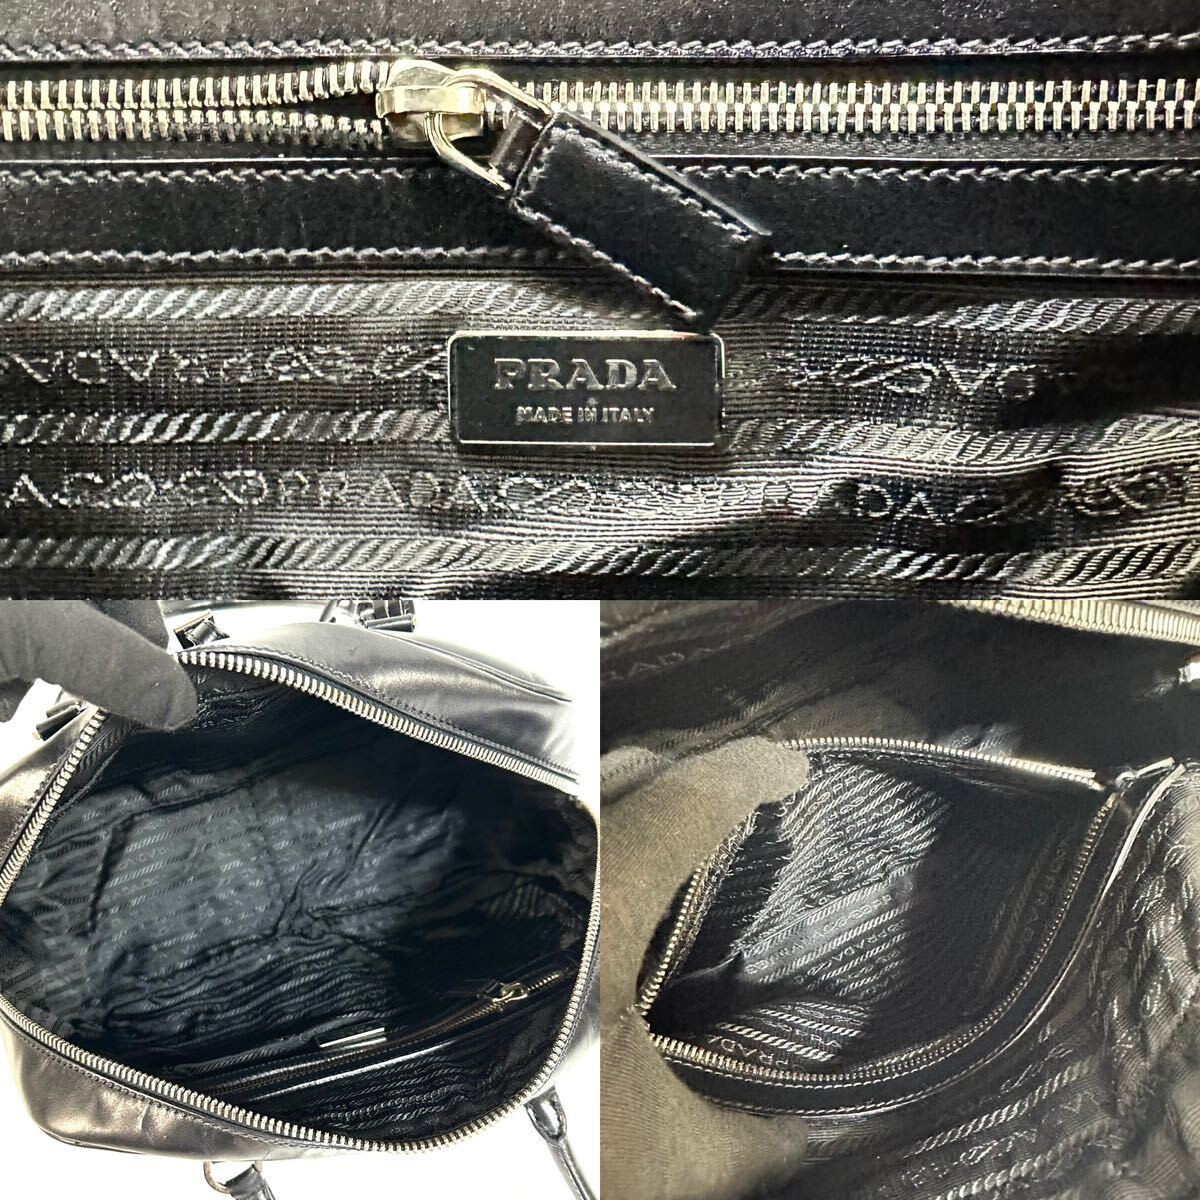 【美品】PRADA プラダ レザー ハンドバッグ ミニ ボストンバッグ ブラック イタリア製 カデナ 保存袋ギャランティカード 付き